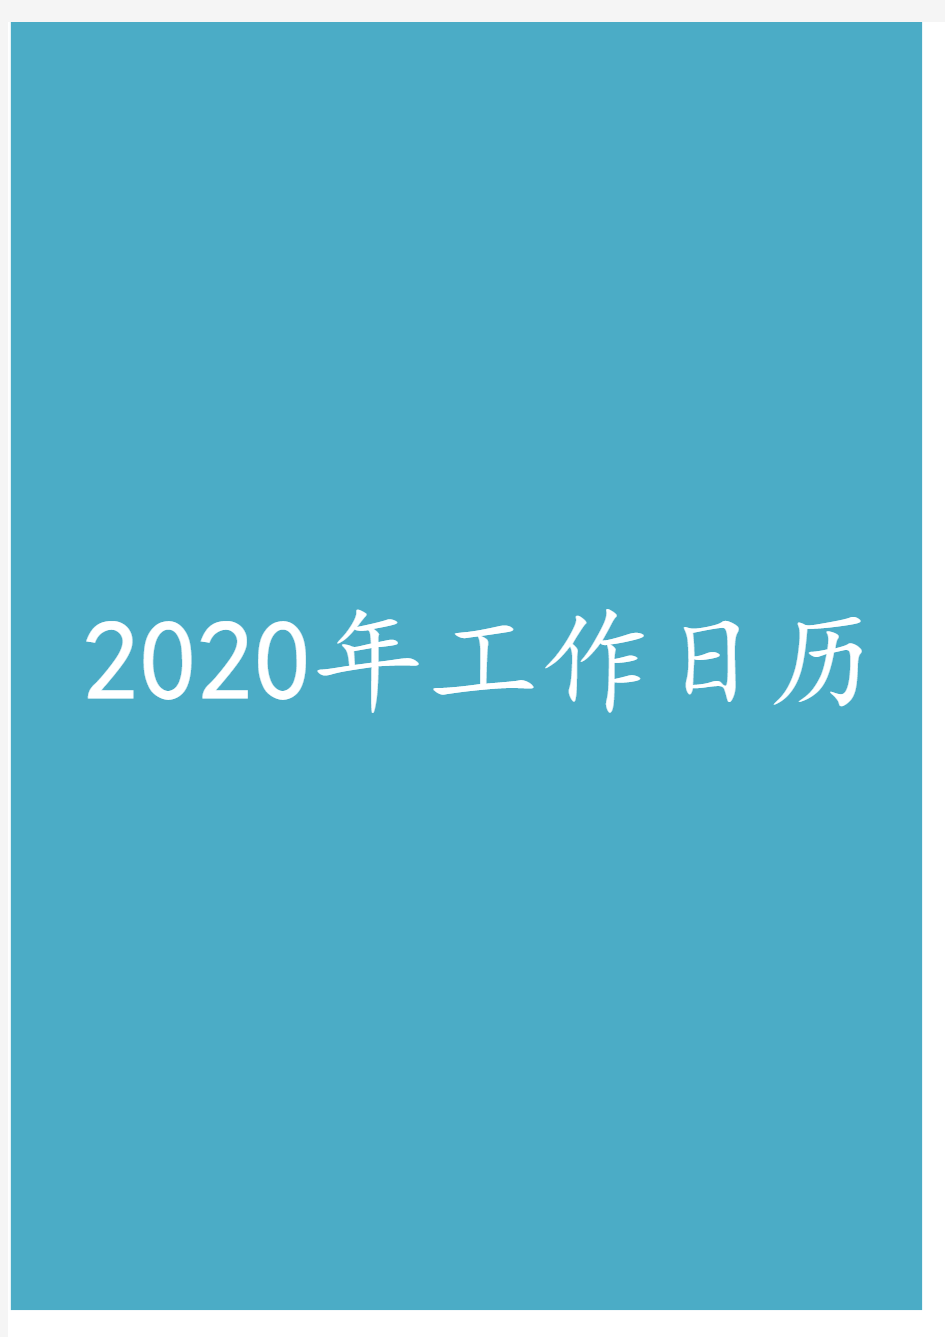 2020年工作计划表(日历表)